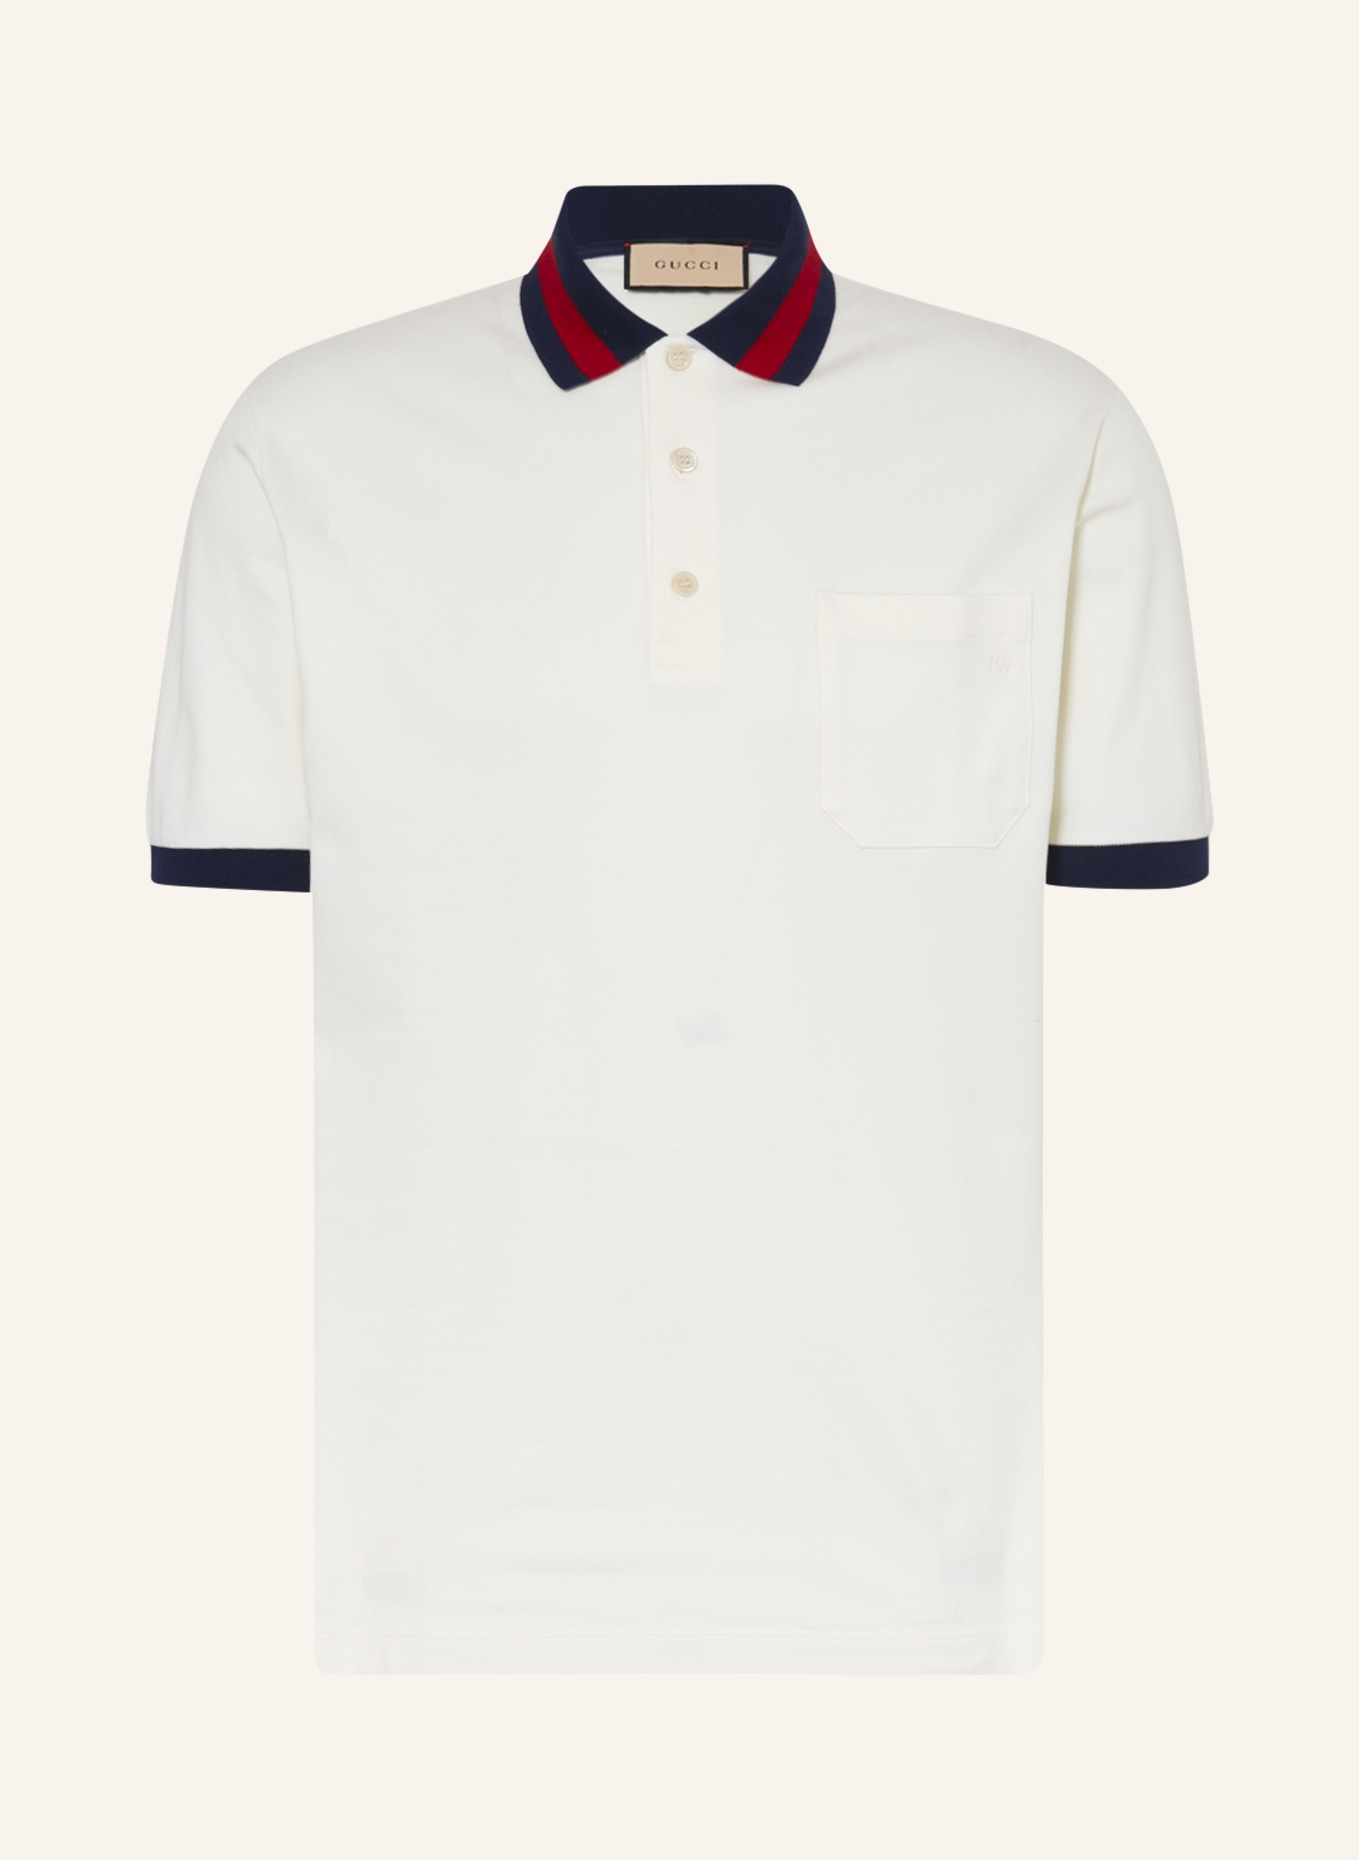 GUCCI Piqué-Poloshirt, Farbe: ECRU/ ROT/ DUNKELBLAU (Bild 1)